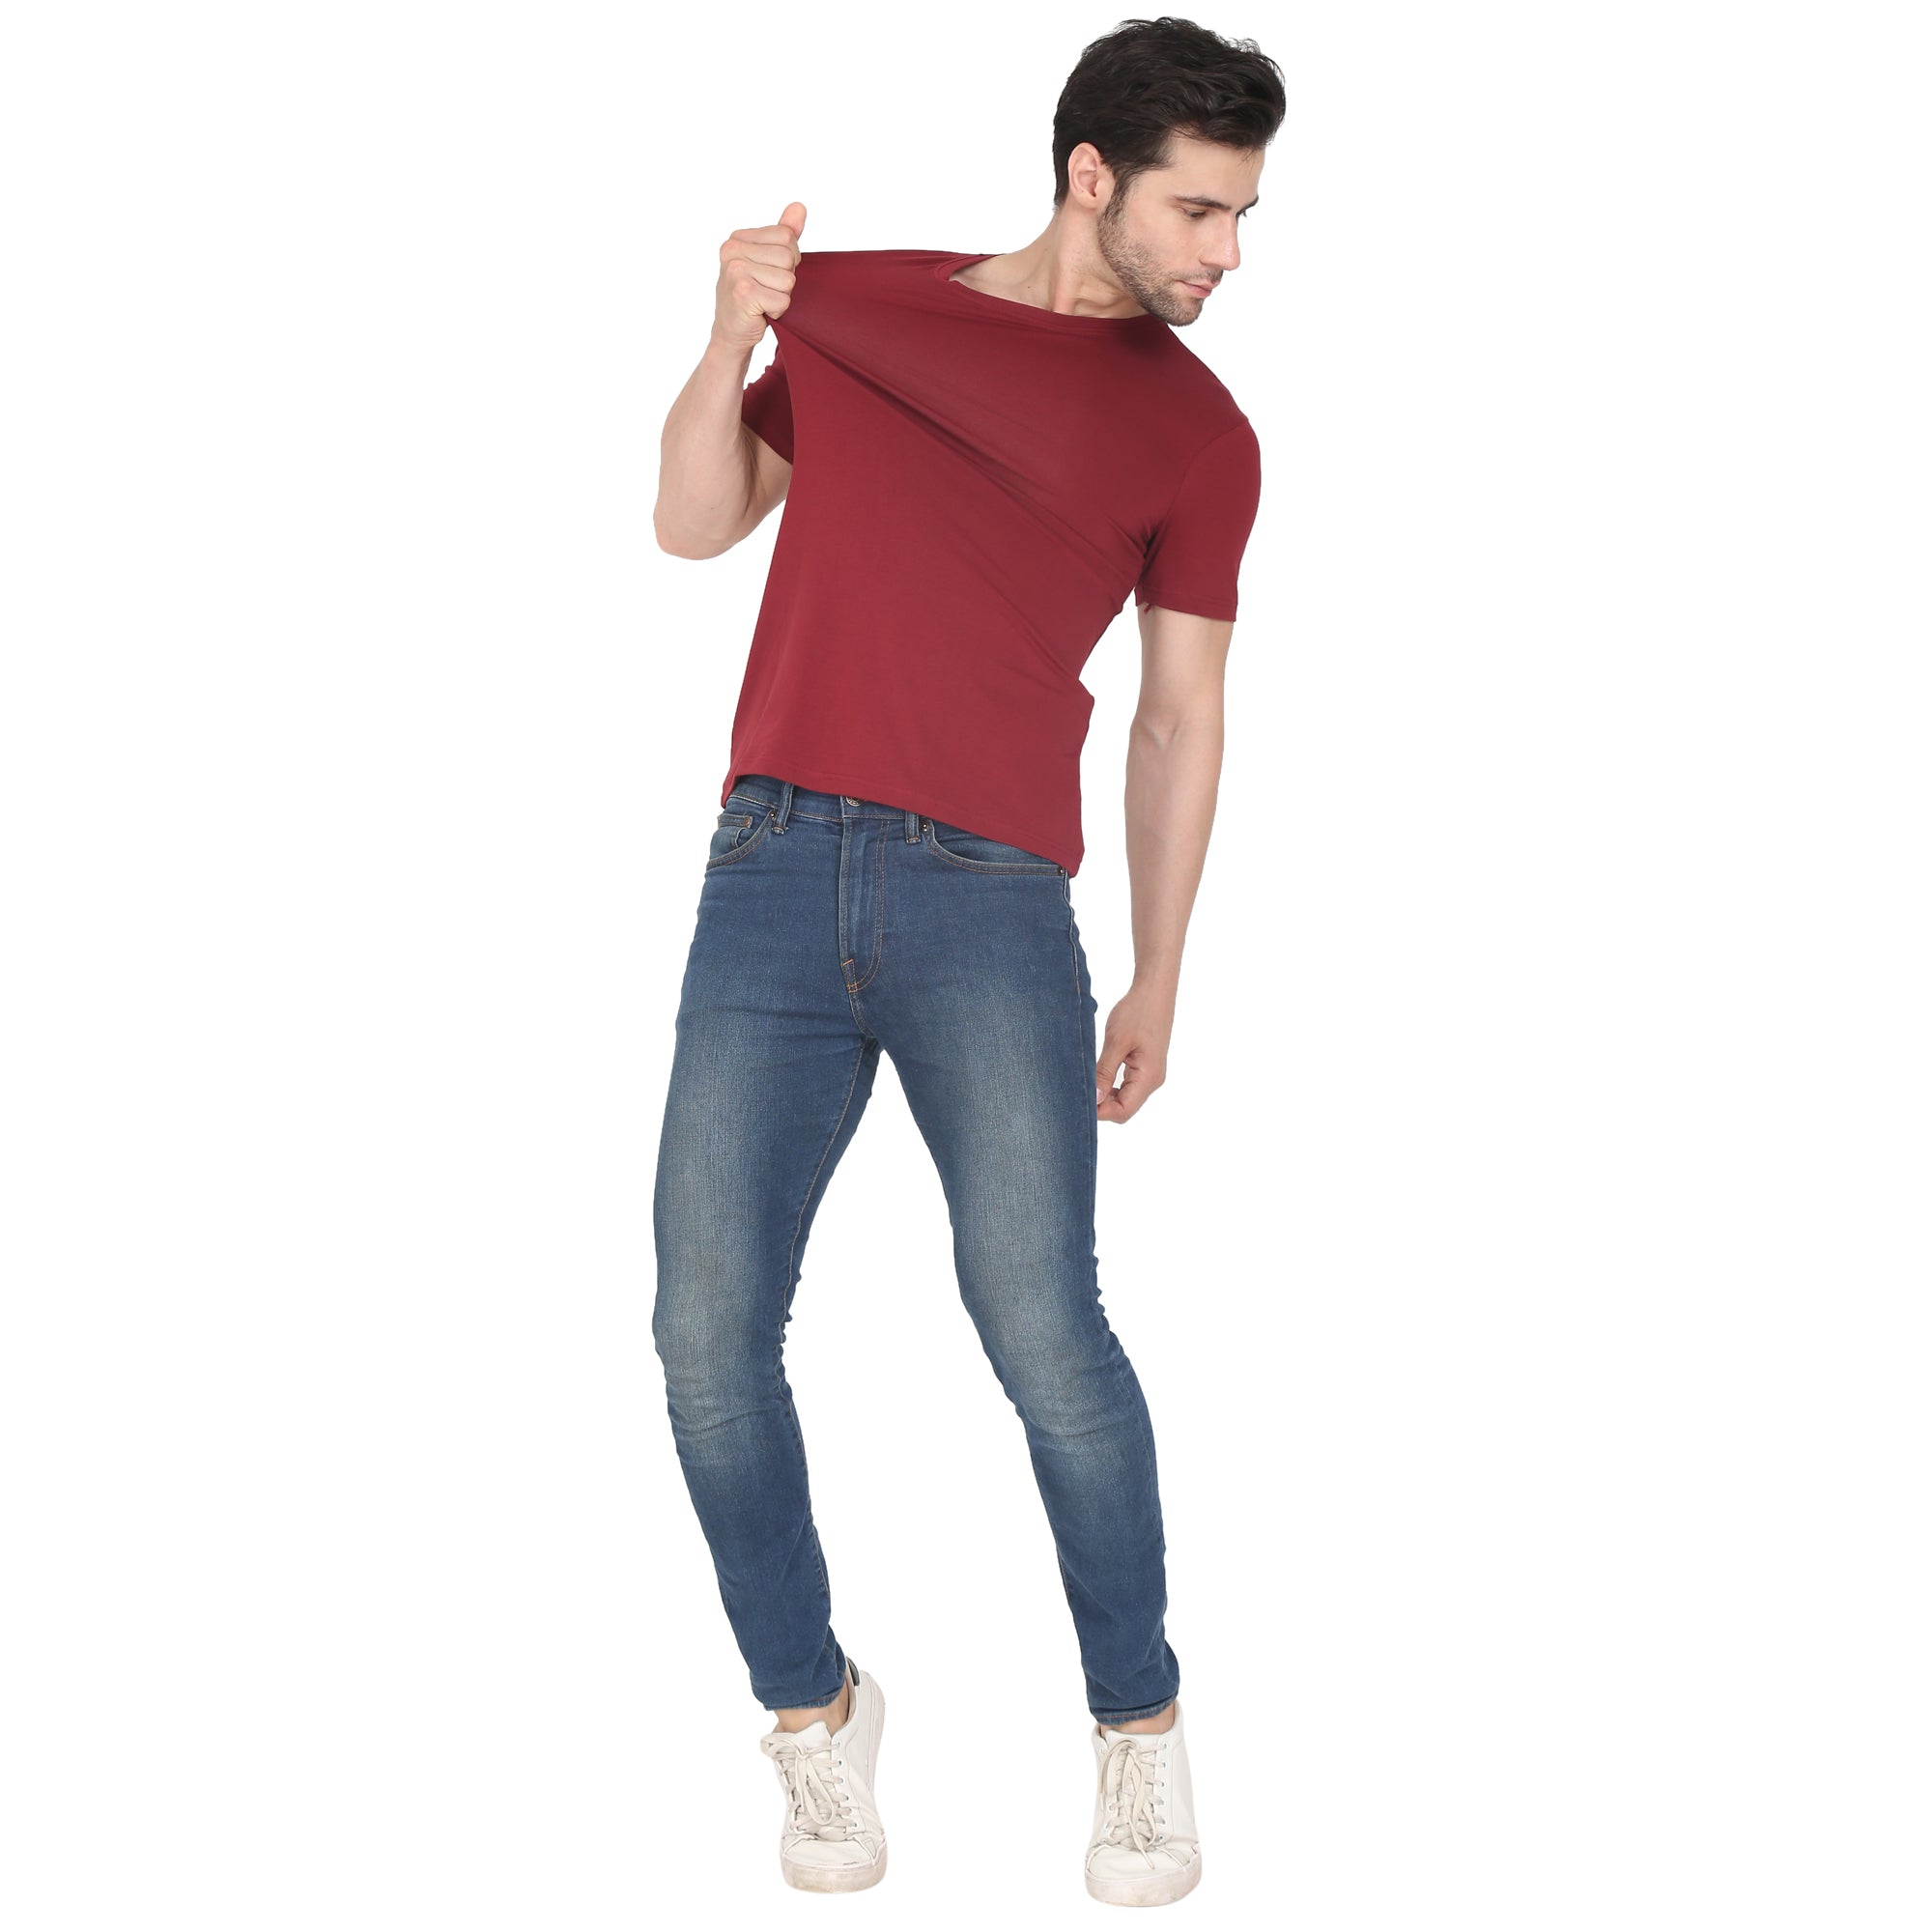 Men Four Way Stretch Cotton Plain T-shirt - Maroon Colour